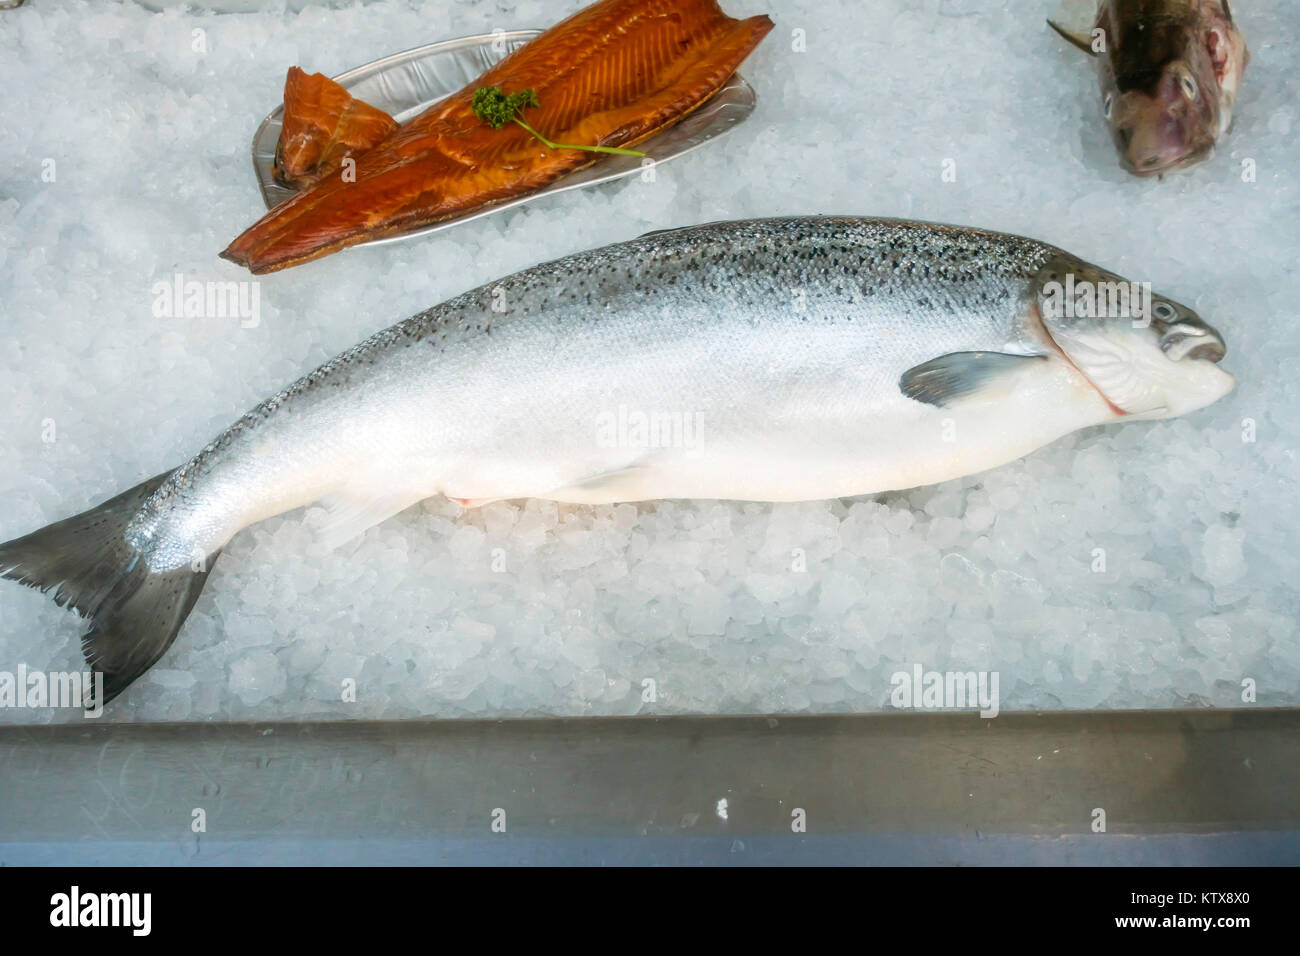 Ein schottischer Lachs, Eiche geräuchert, Lachs und Kabeljau auf  zerstoßenem Eis, frischen Fisch und Meeresfrüchte erhalten in einem  Schaufenster in North Yorkshire UK Stockfotografie - Alamy